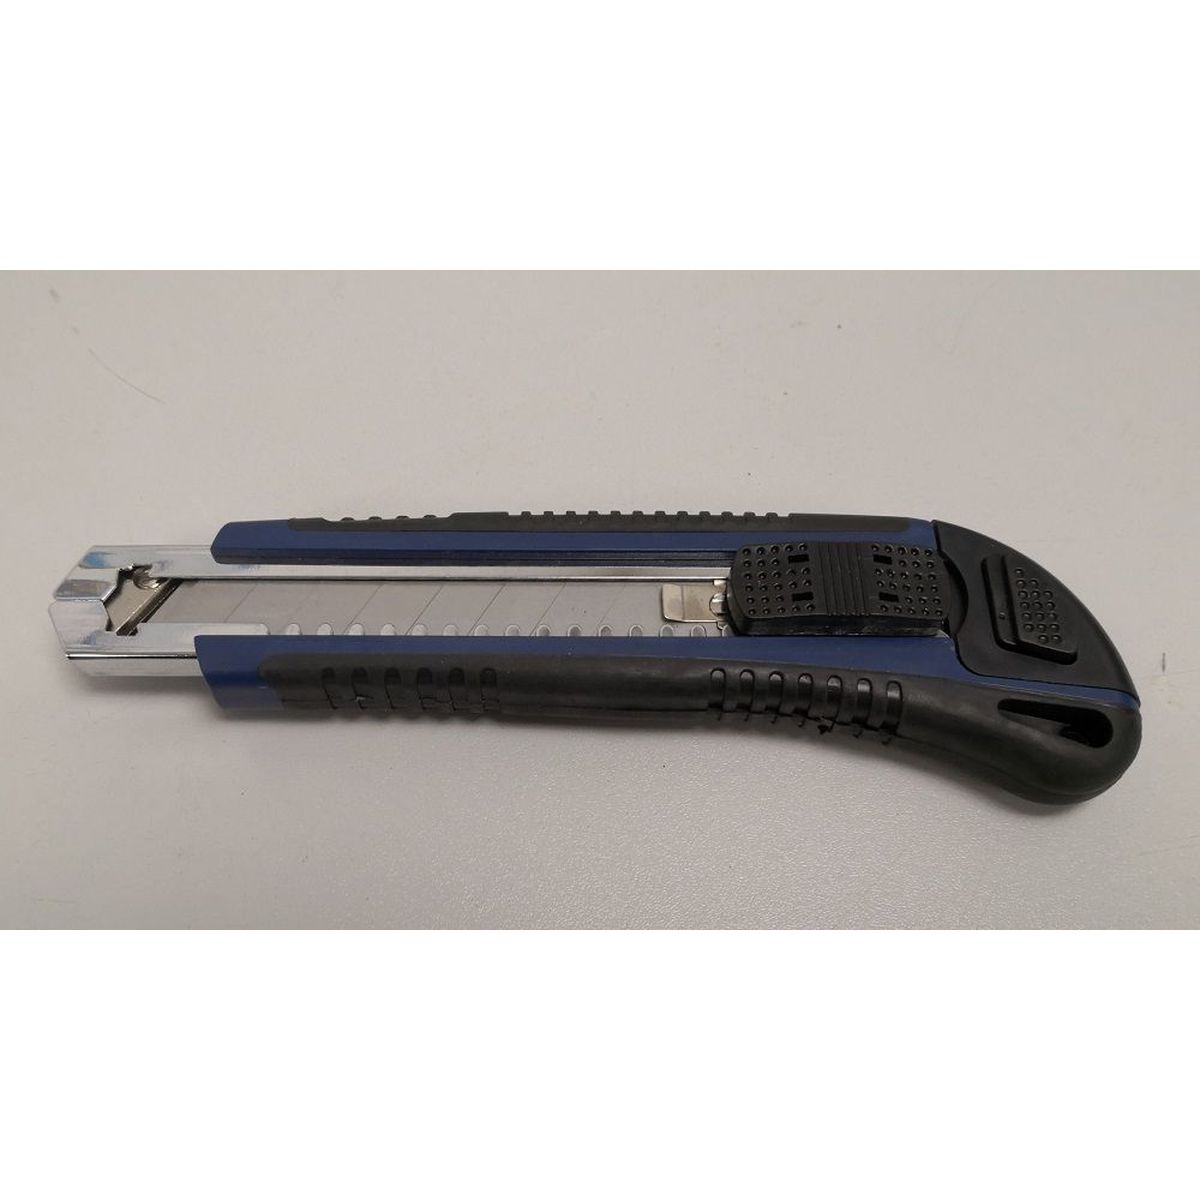 Cuttermesser 18mm Utility Knife 